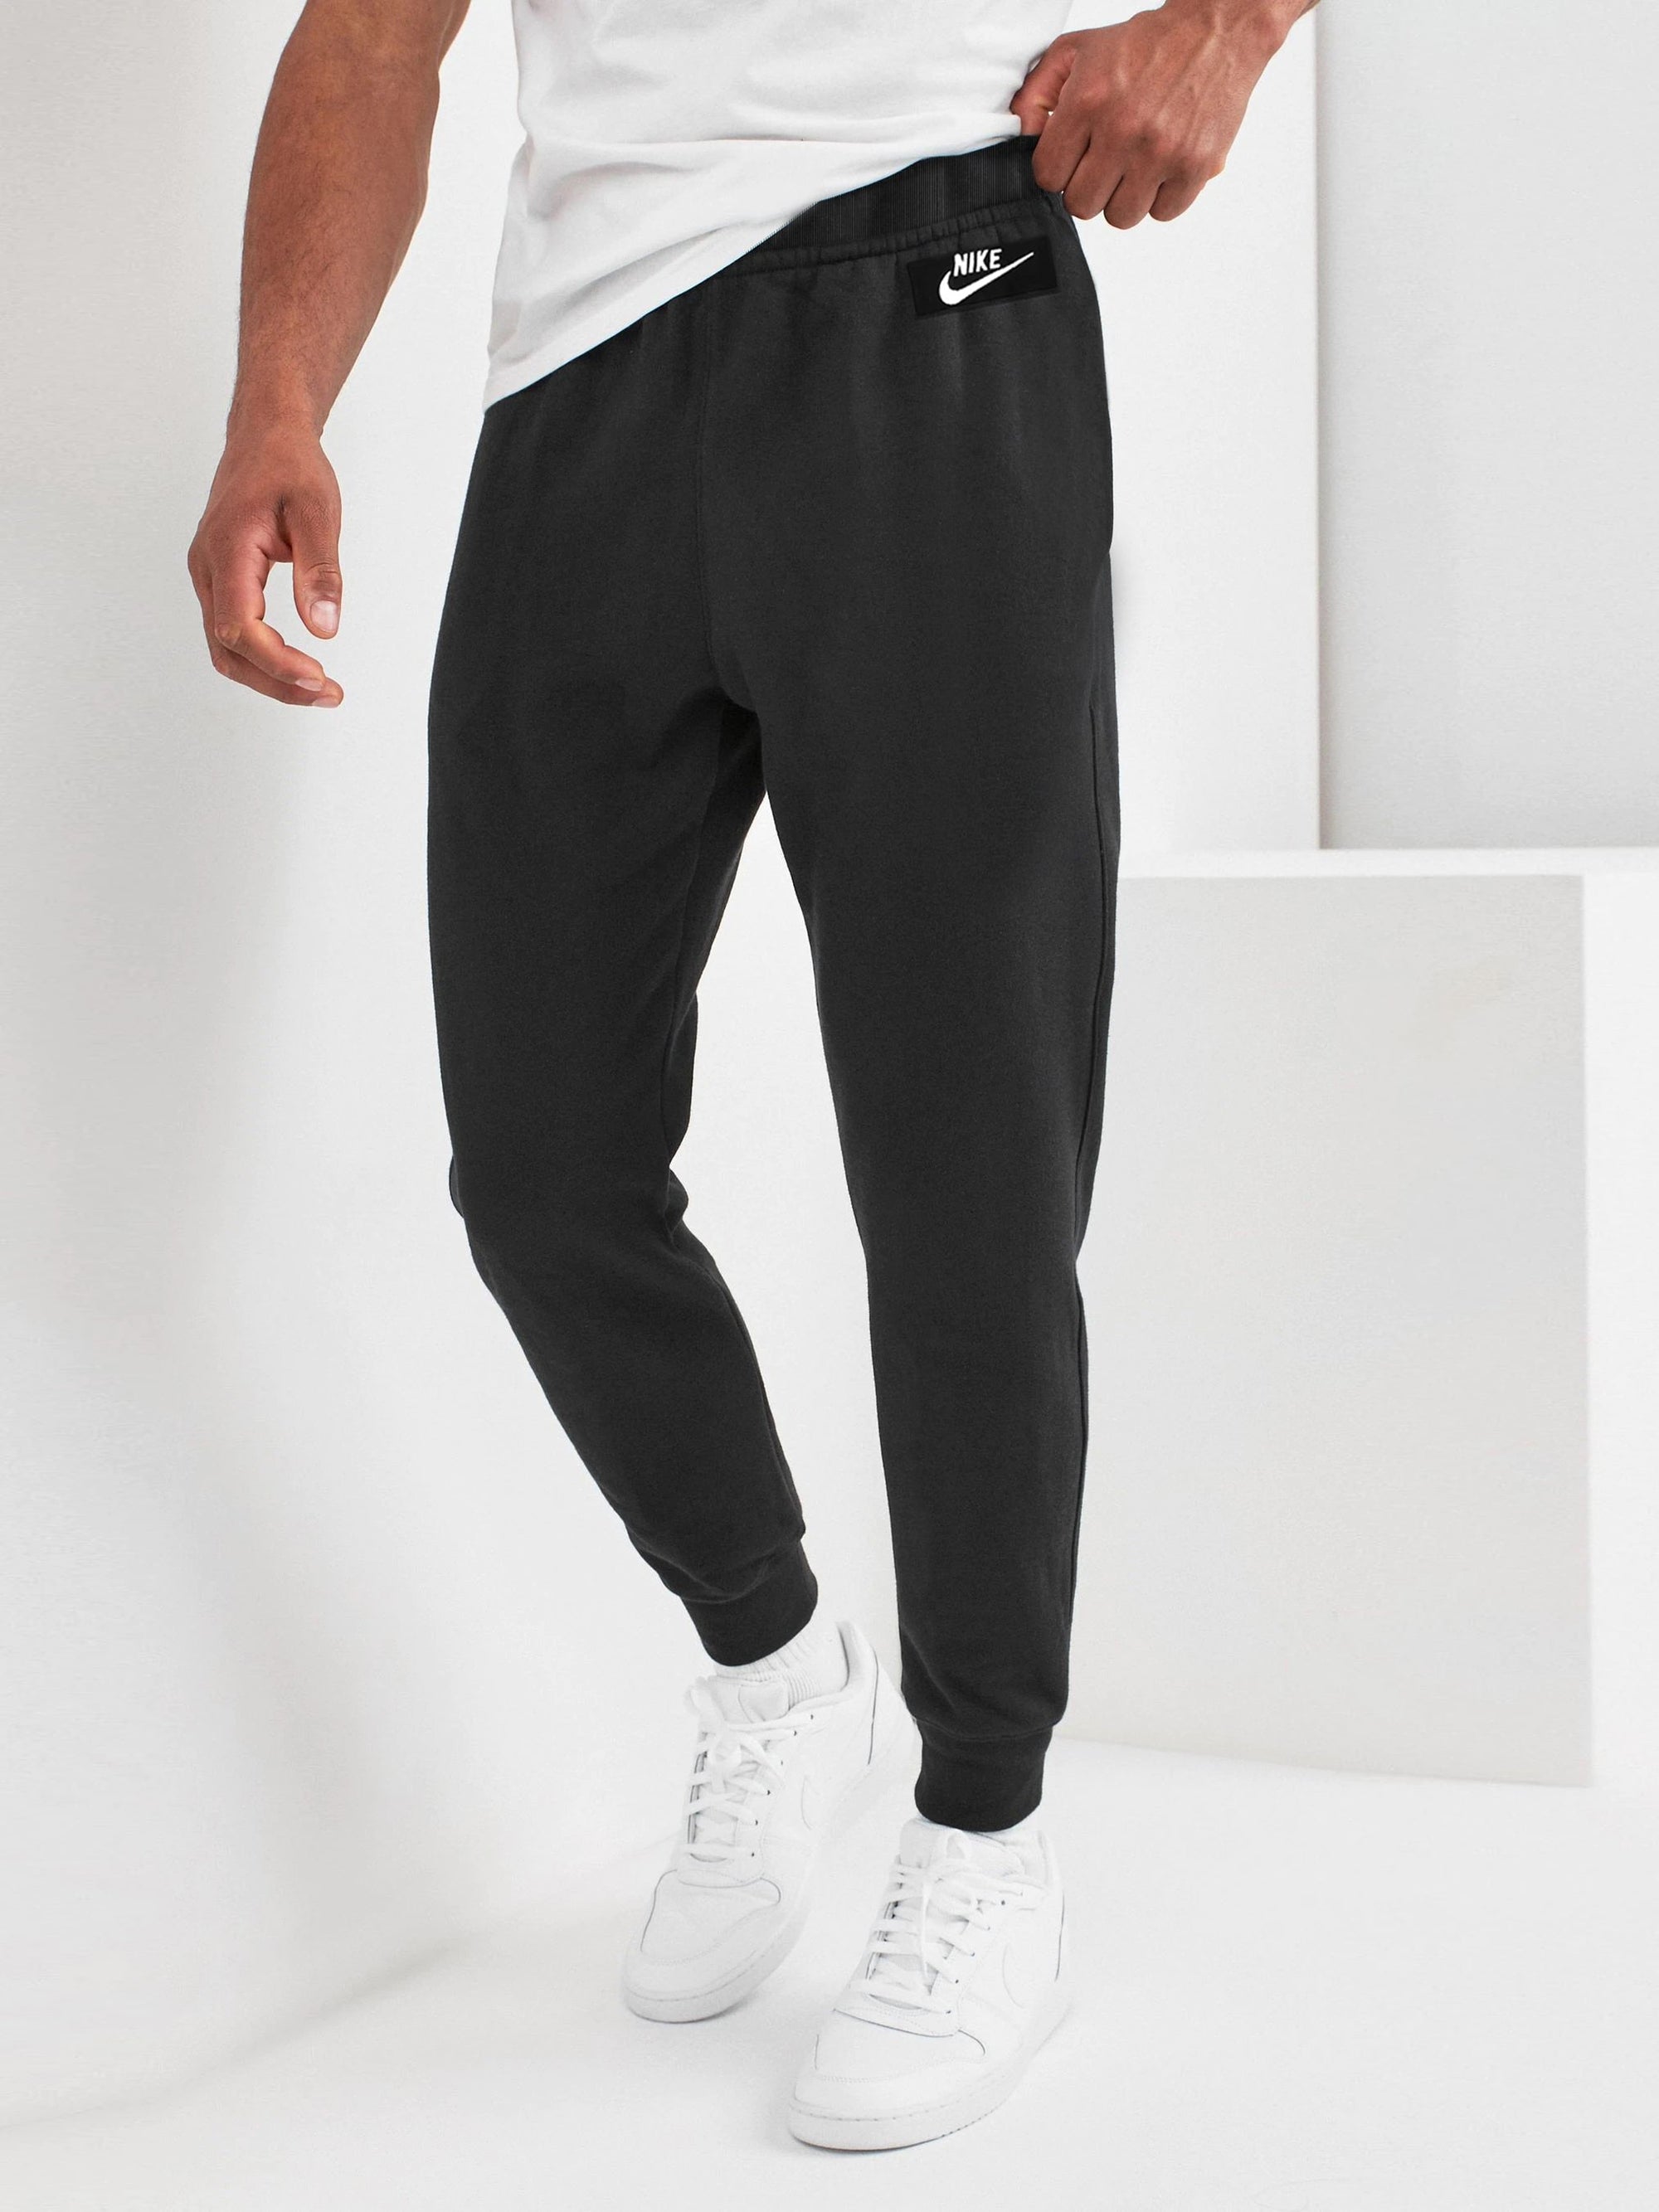 NK Fleece Slim Fit Jogger Trouser For Men-Black-RT1755